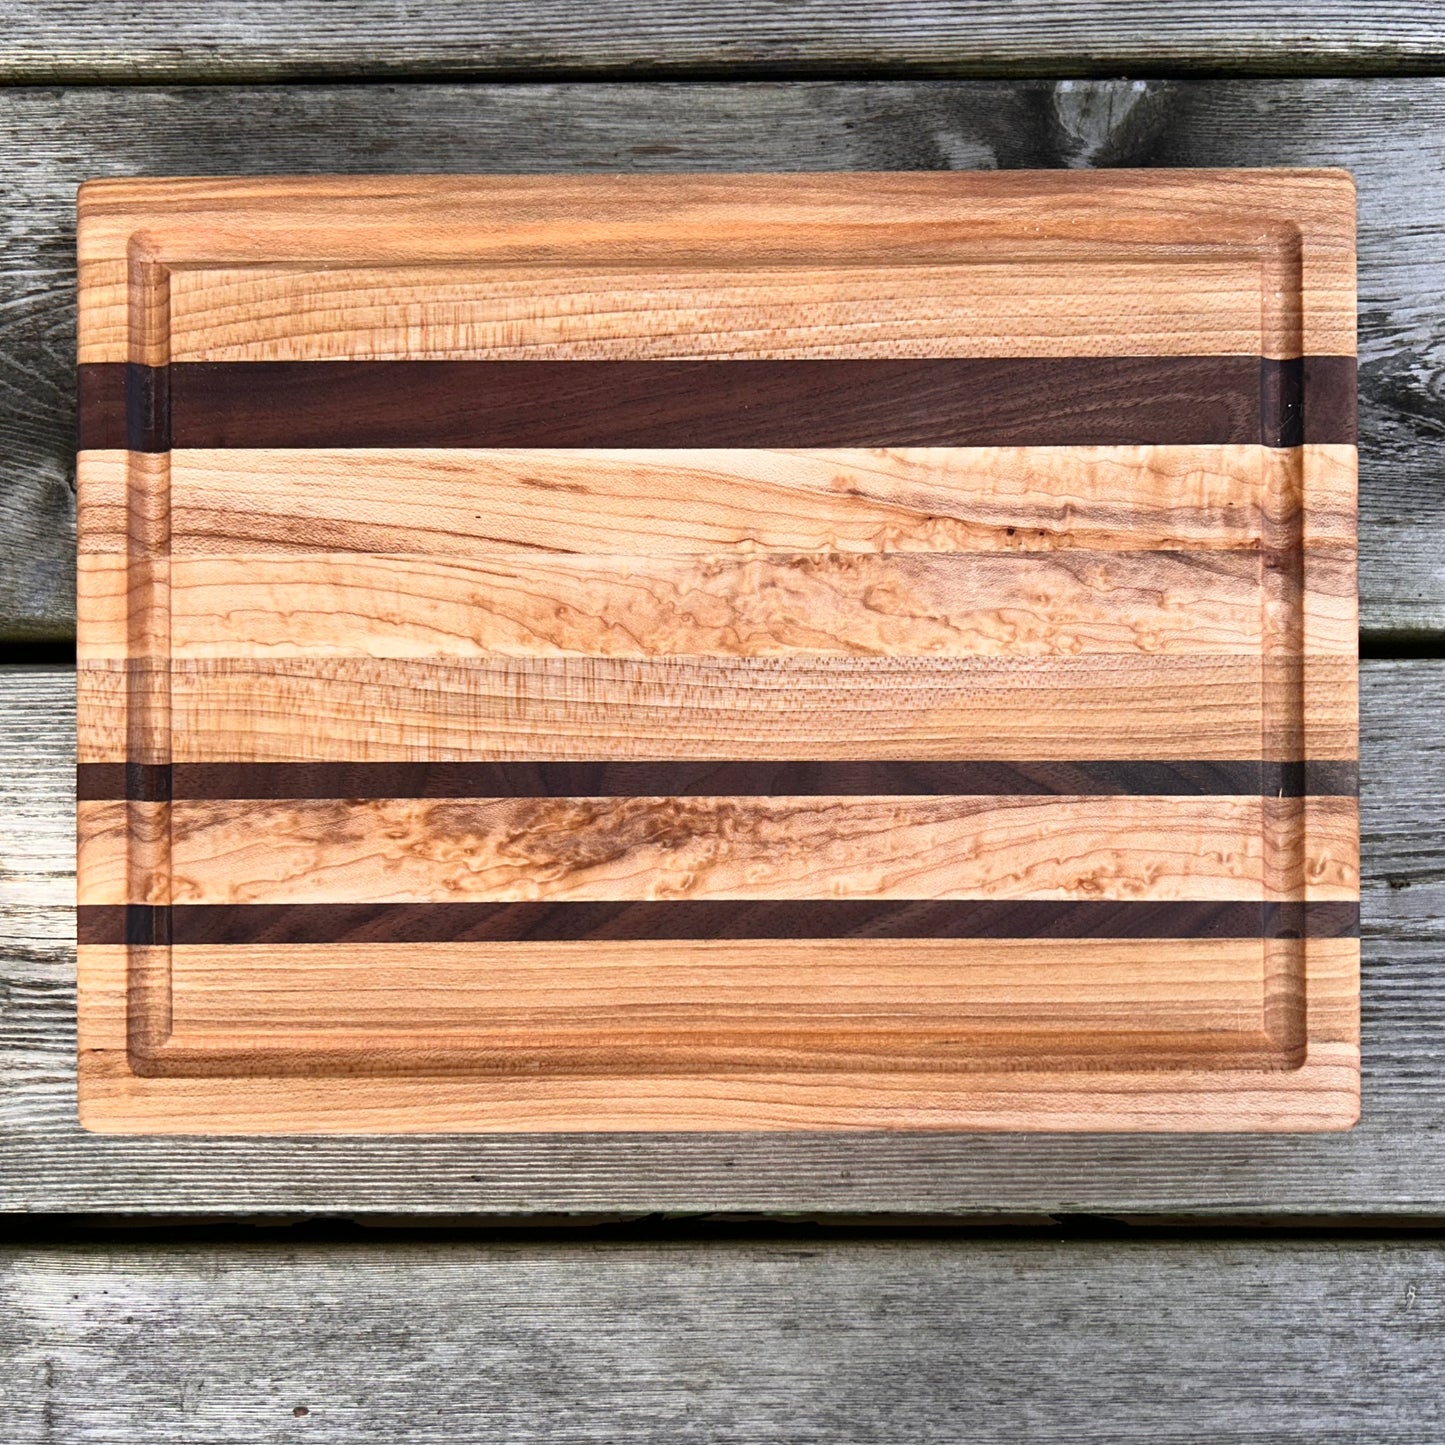 Maple with Walnut Cutting Board